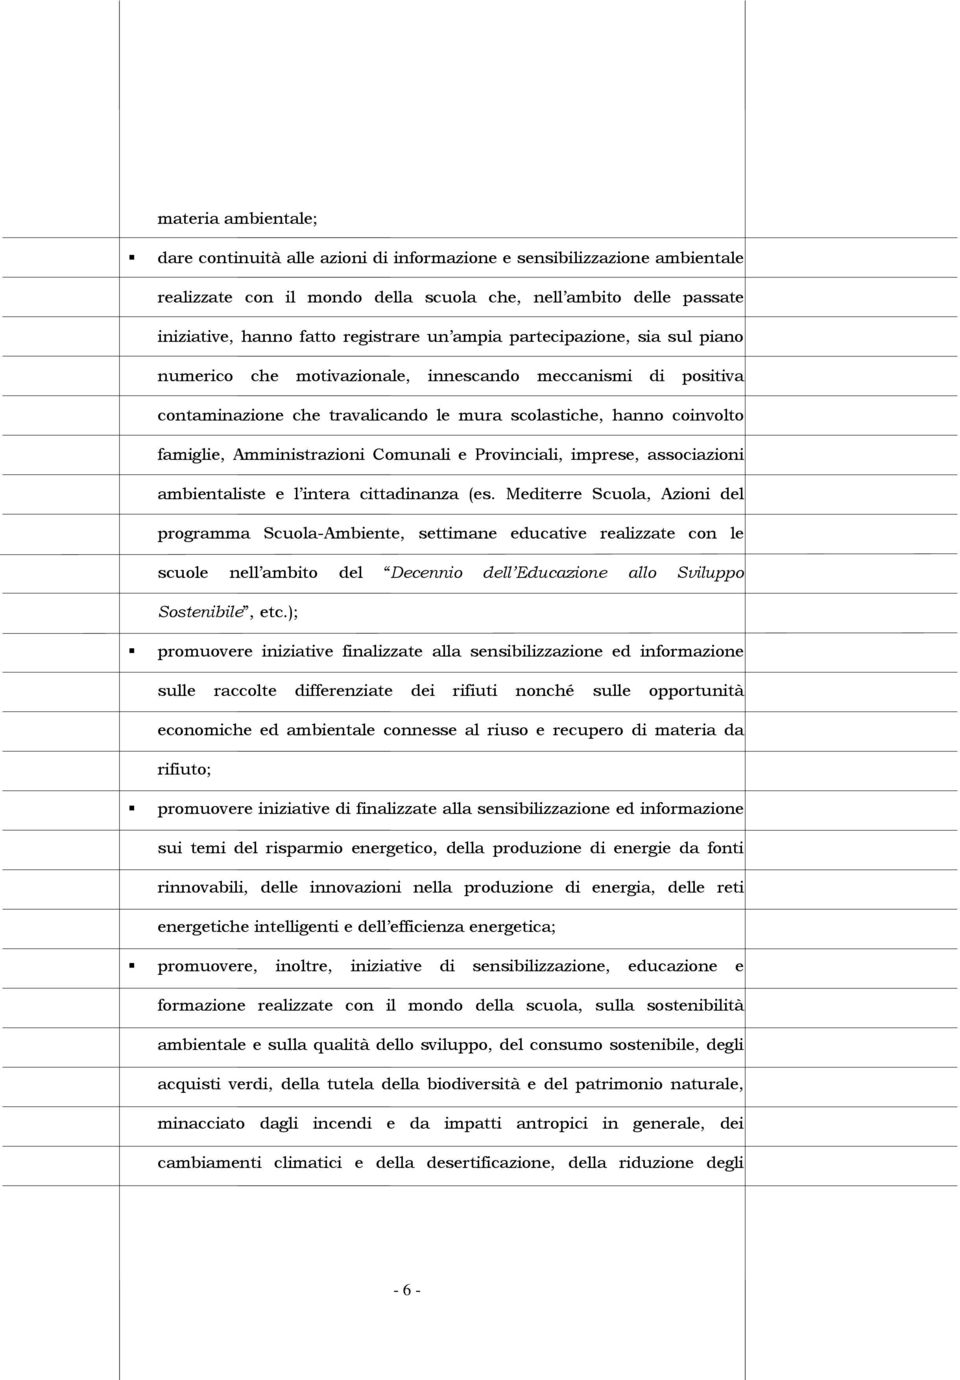 Comunali e Provinciali, imprese, associazioni ambientaliste e l intera cittadinanza (es.